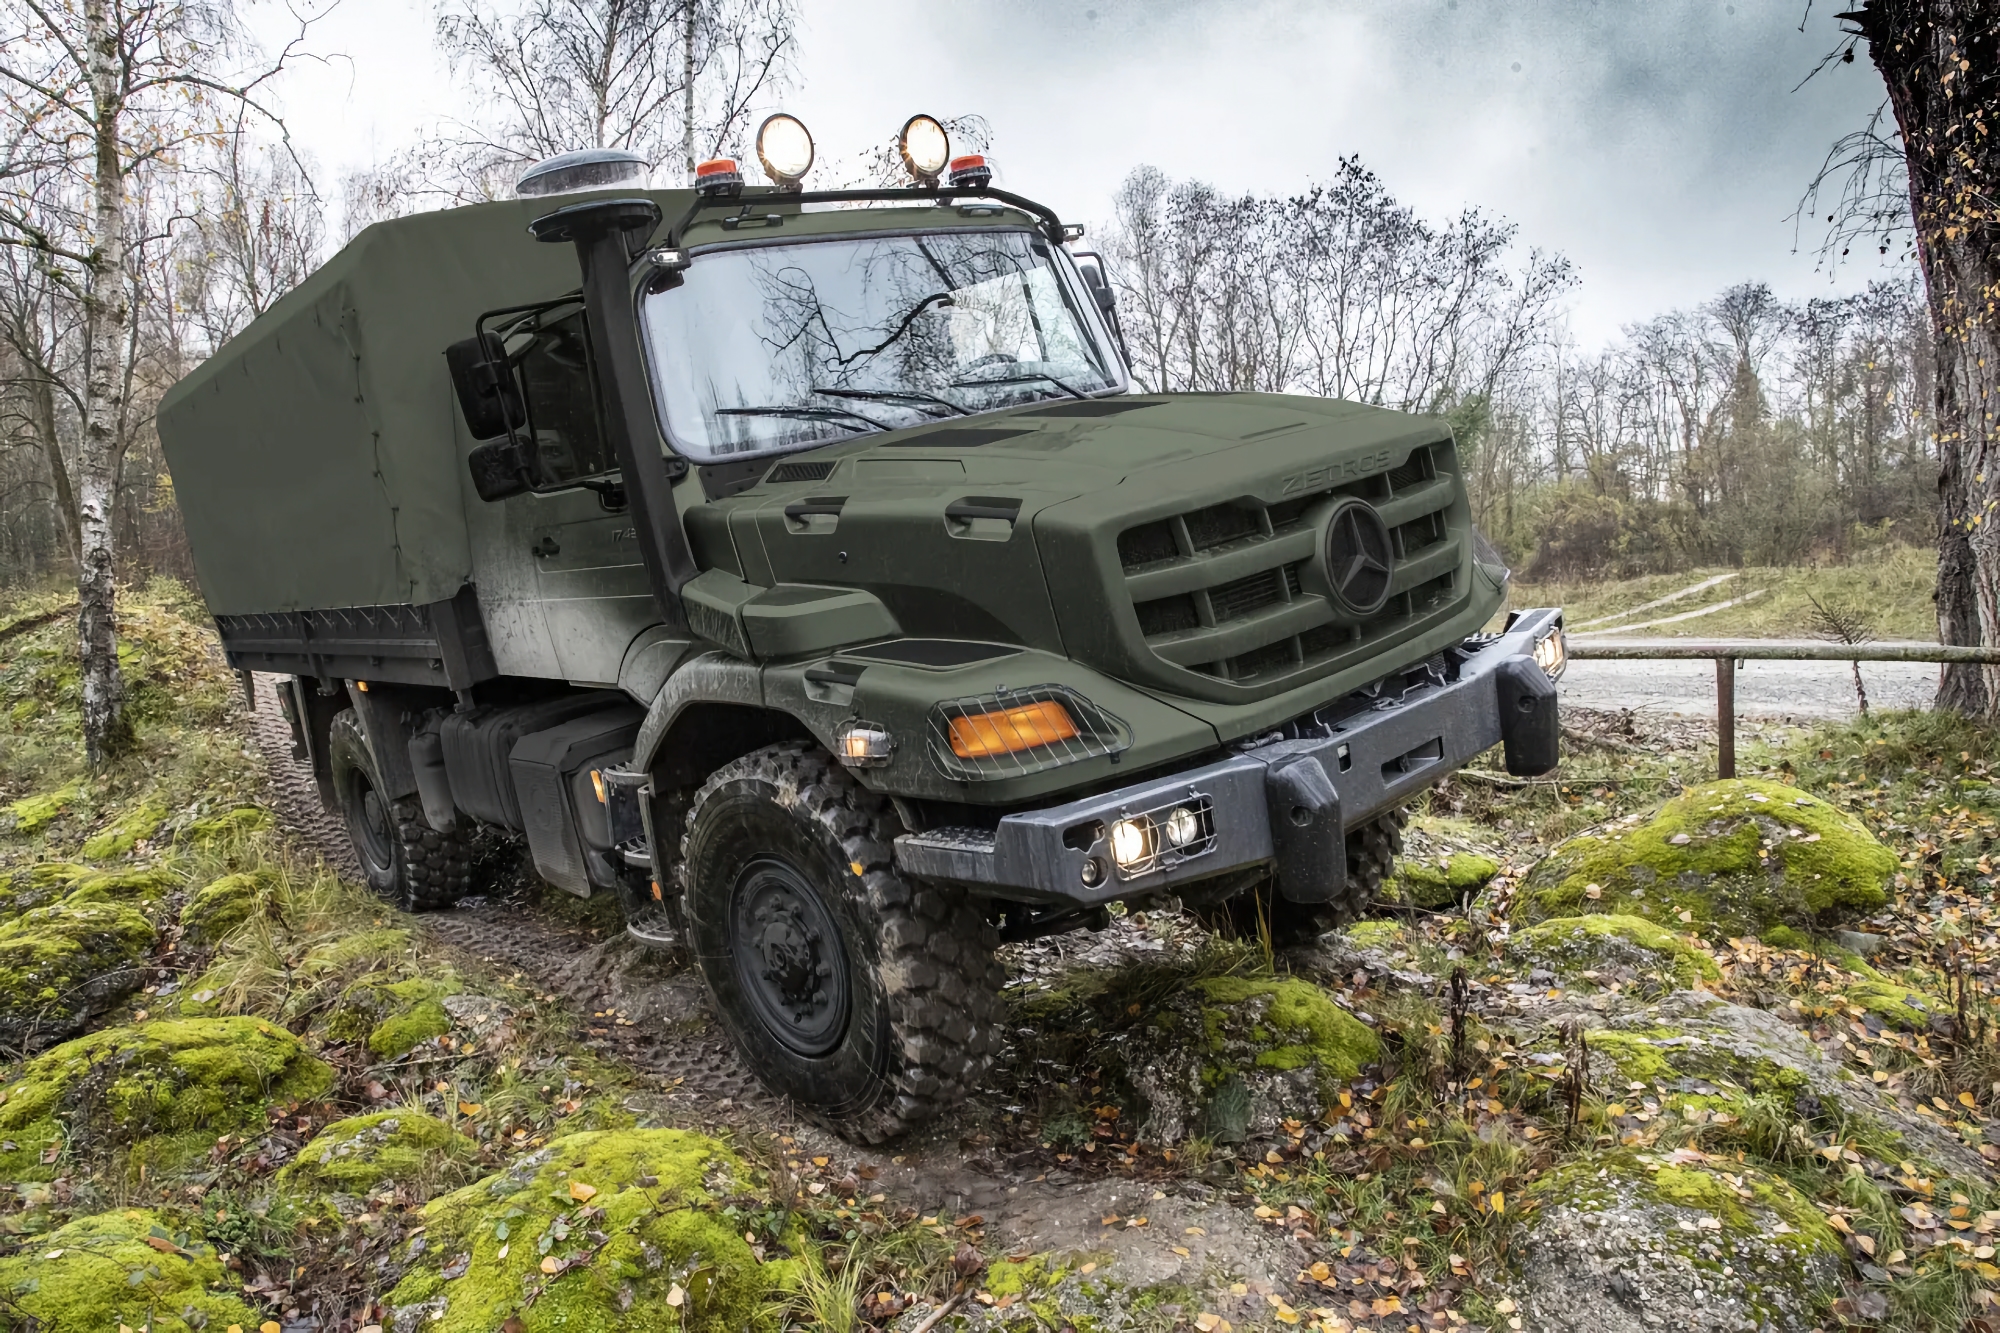 Mercedes-Benz Zetros lastbilar, Biber asfaltsläggare och Gepard ammunition för luftvärnsstridsvagnar: Tyskland ger Ukraina nytt militärt stödpaket